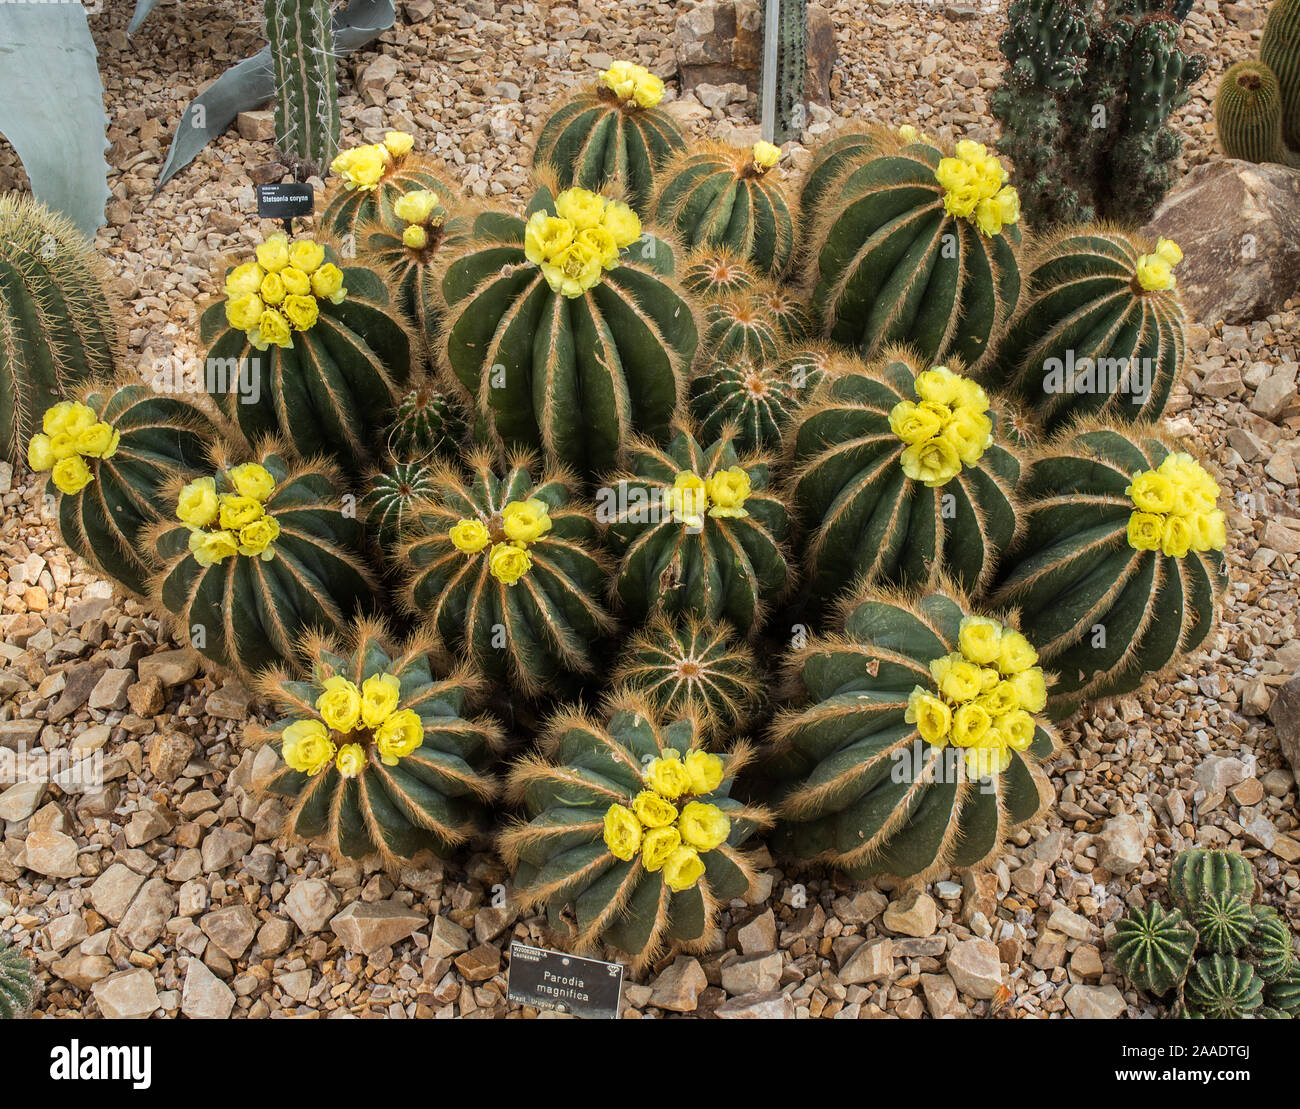 Parodia Magnifica cactus in bloom Stock Photo